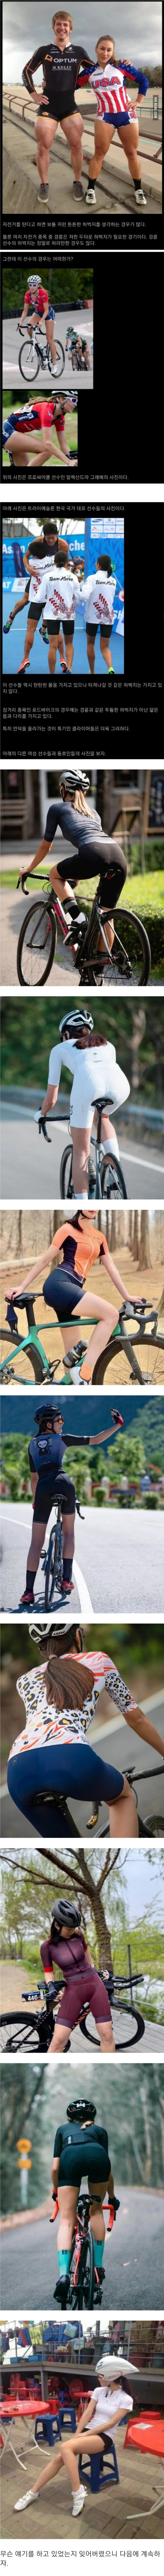 자전거를 타면 허벅지가 두꺼워 지는지 알아보자